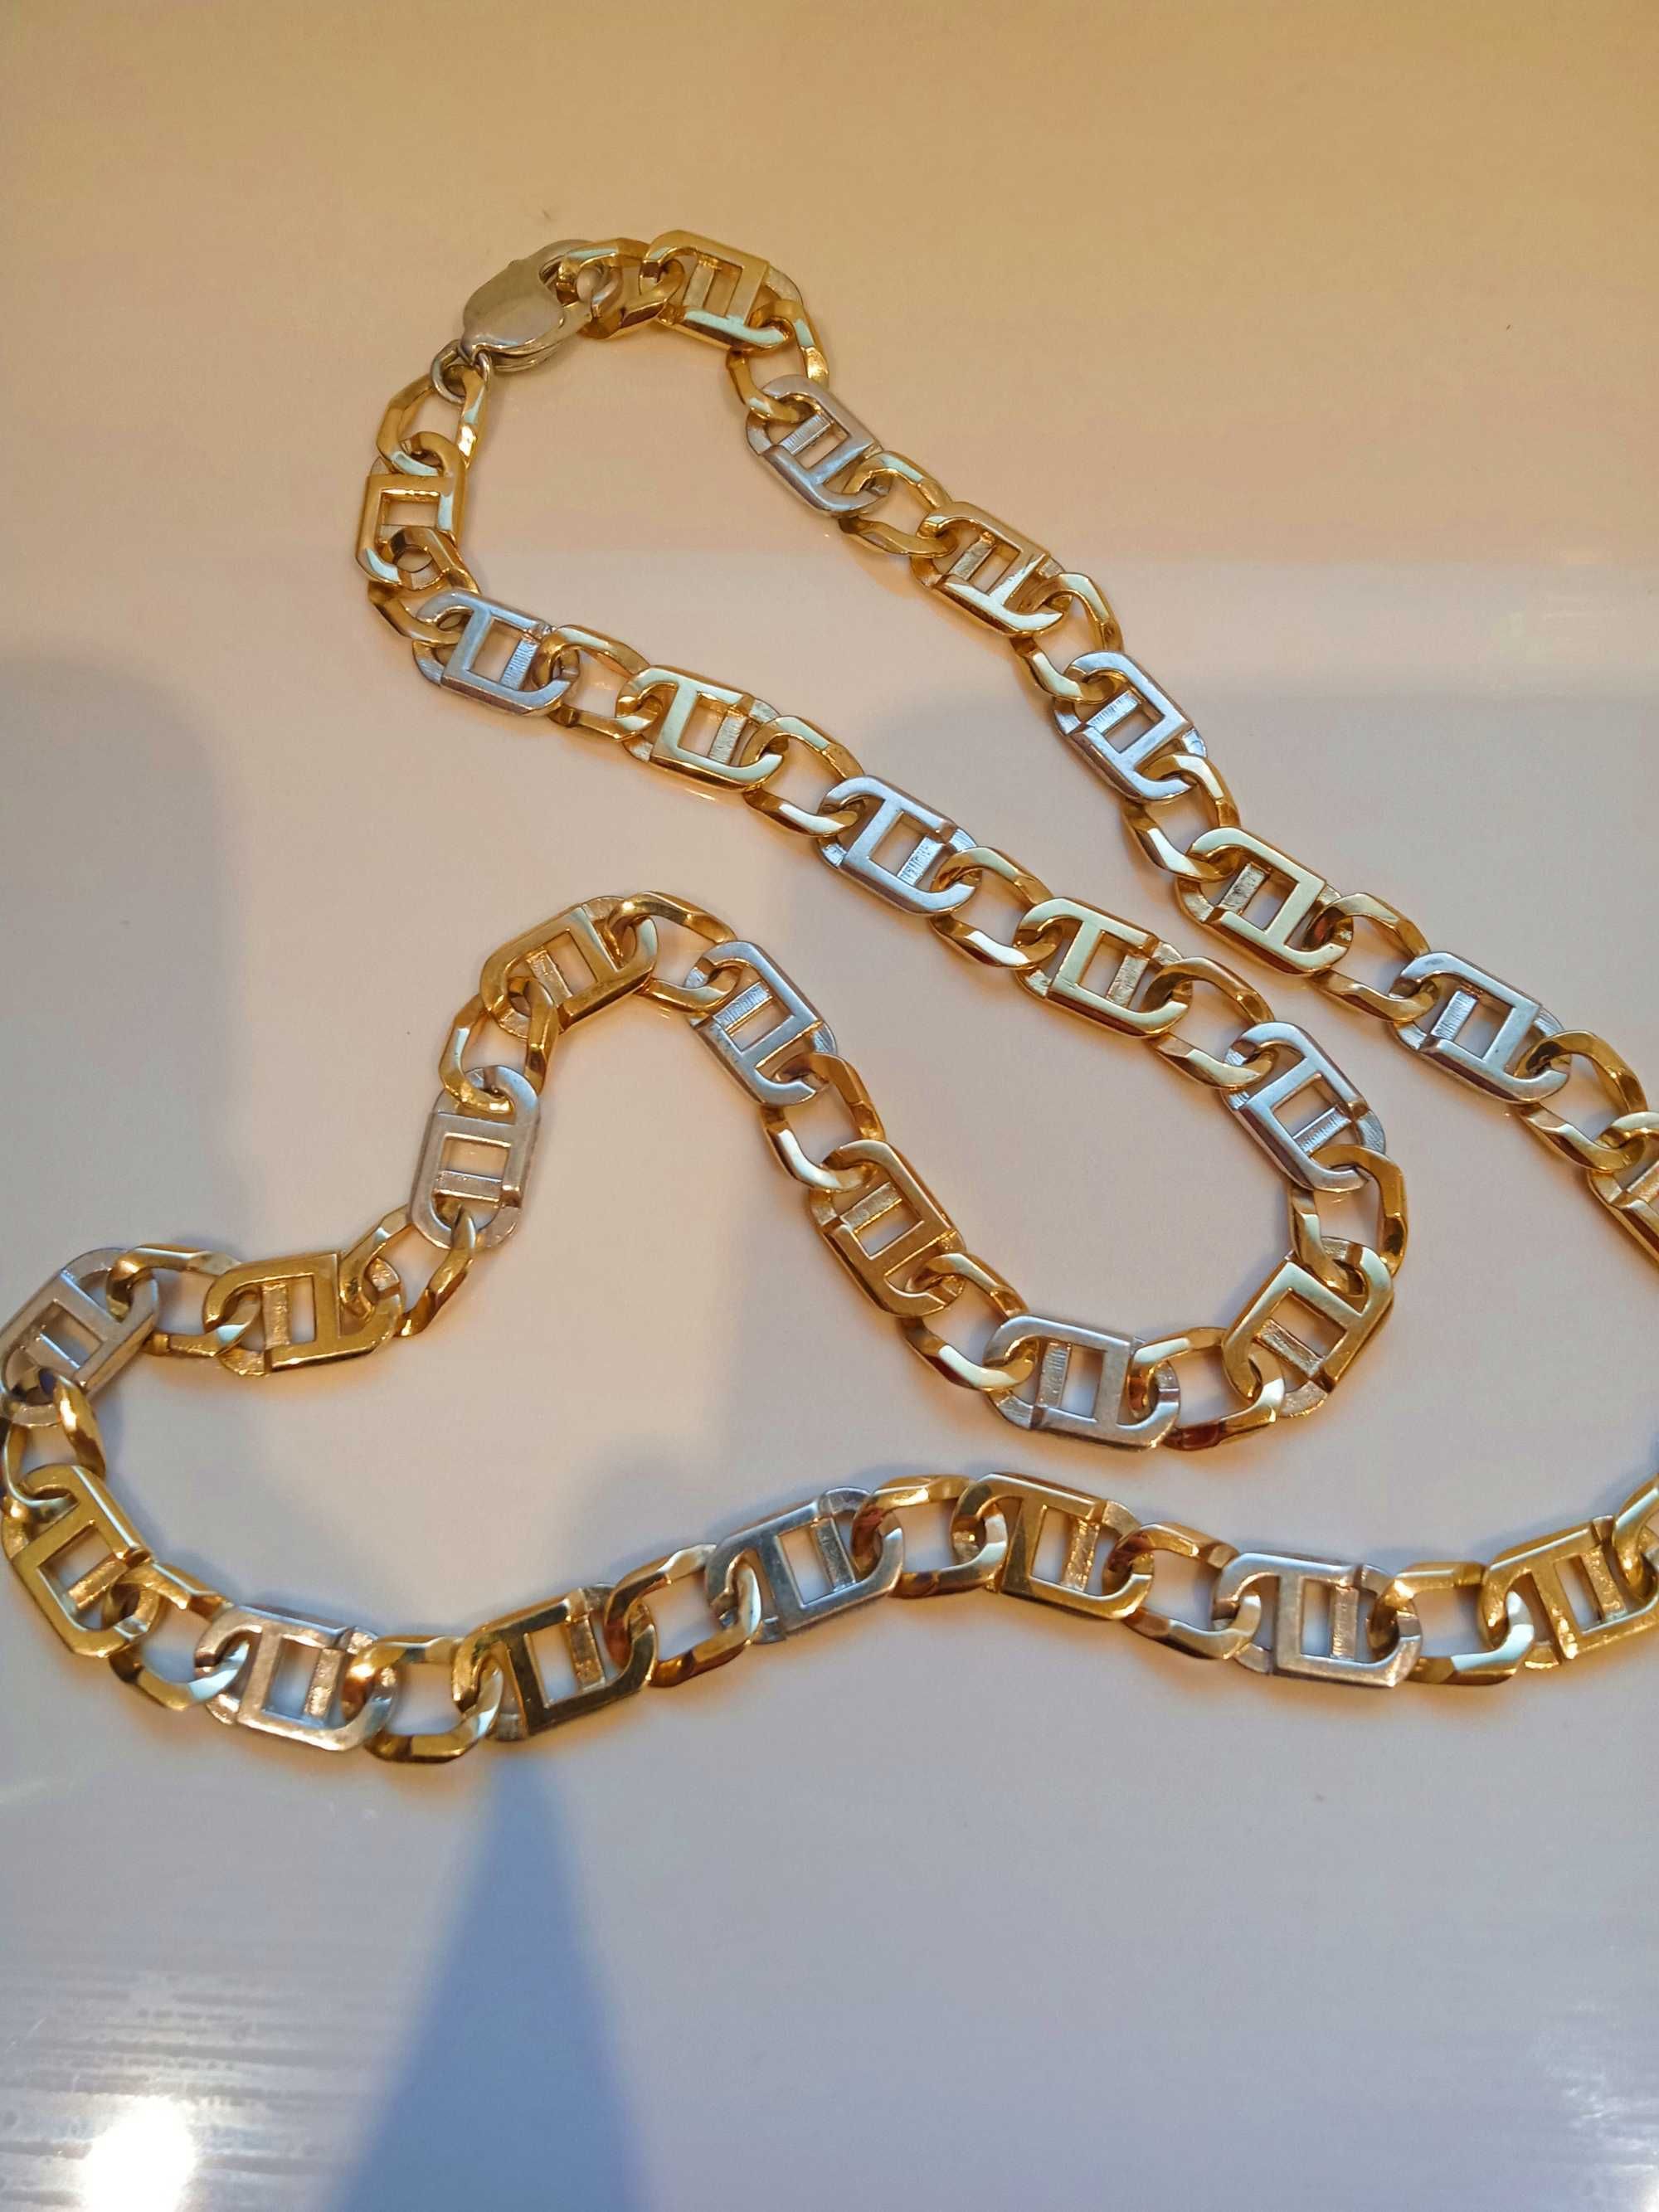 Złoty łańcuszek 333 65 gram, 9 mm szeroki 8 k